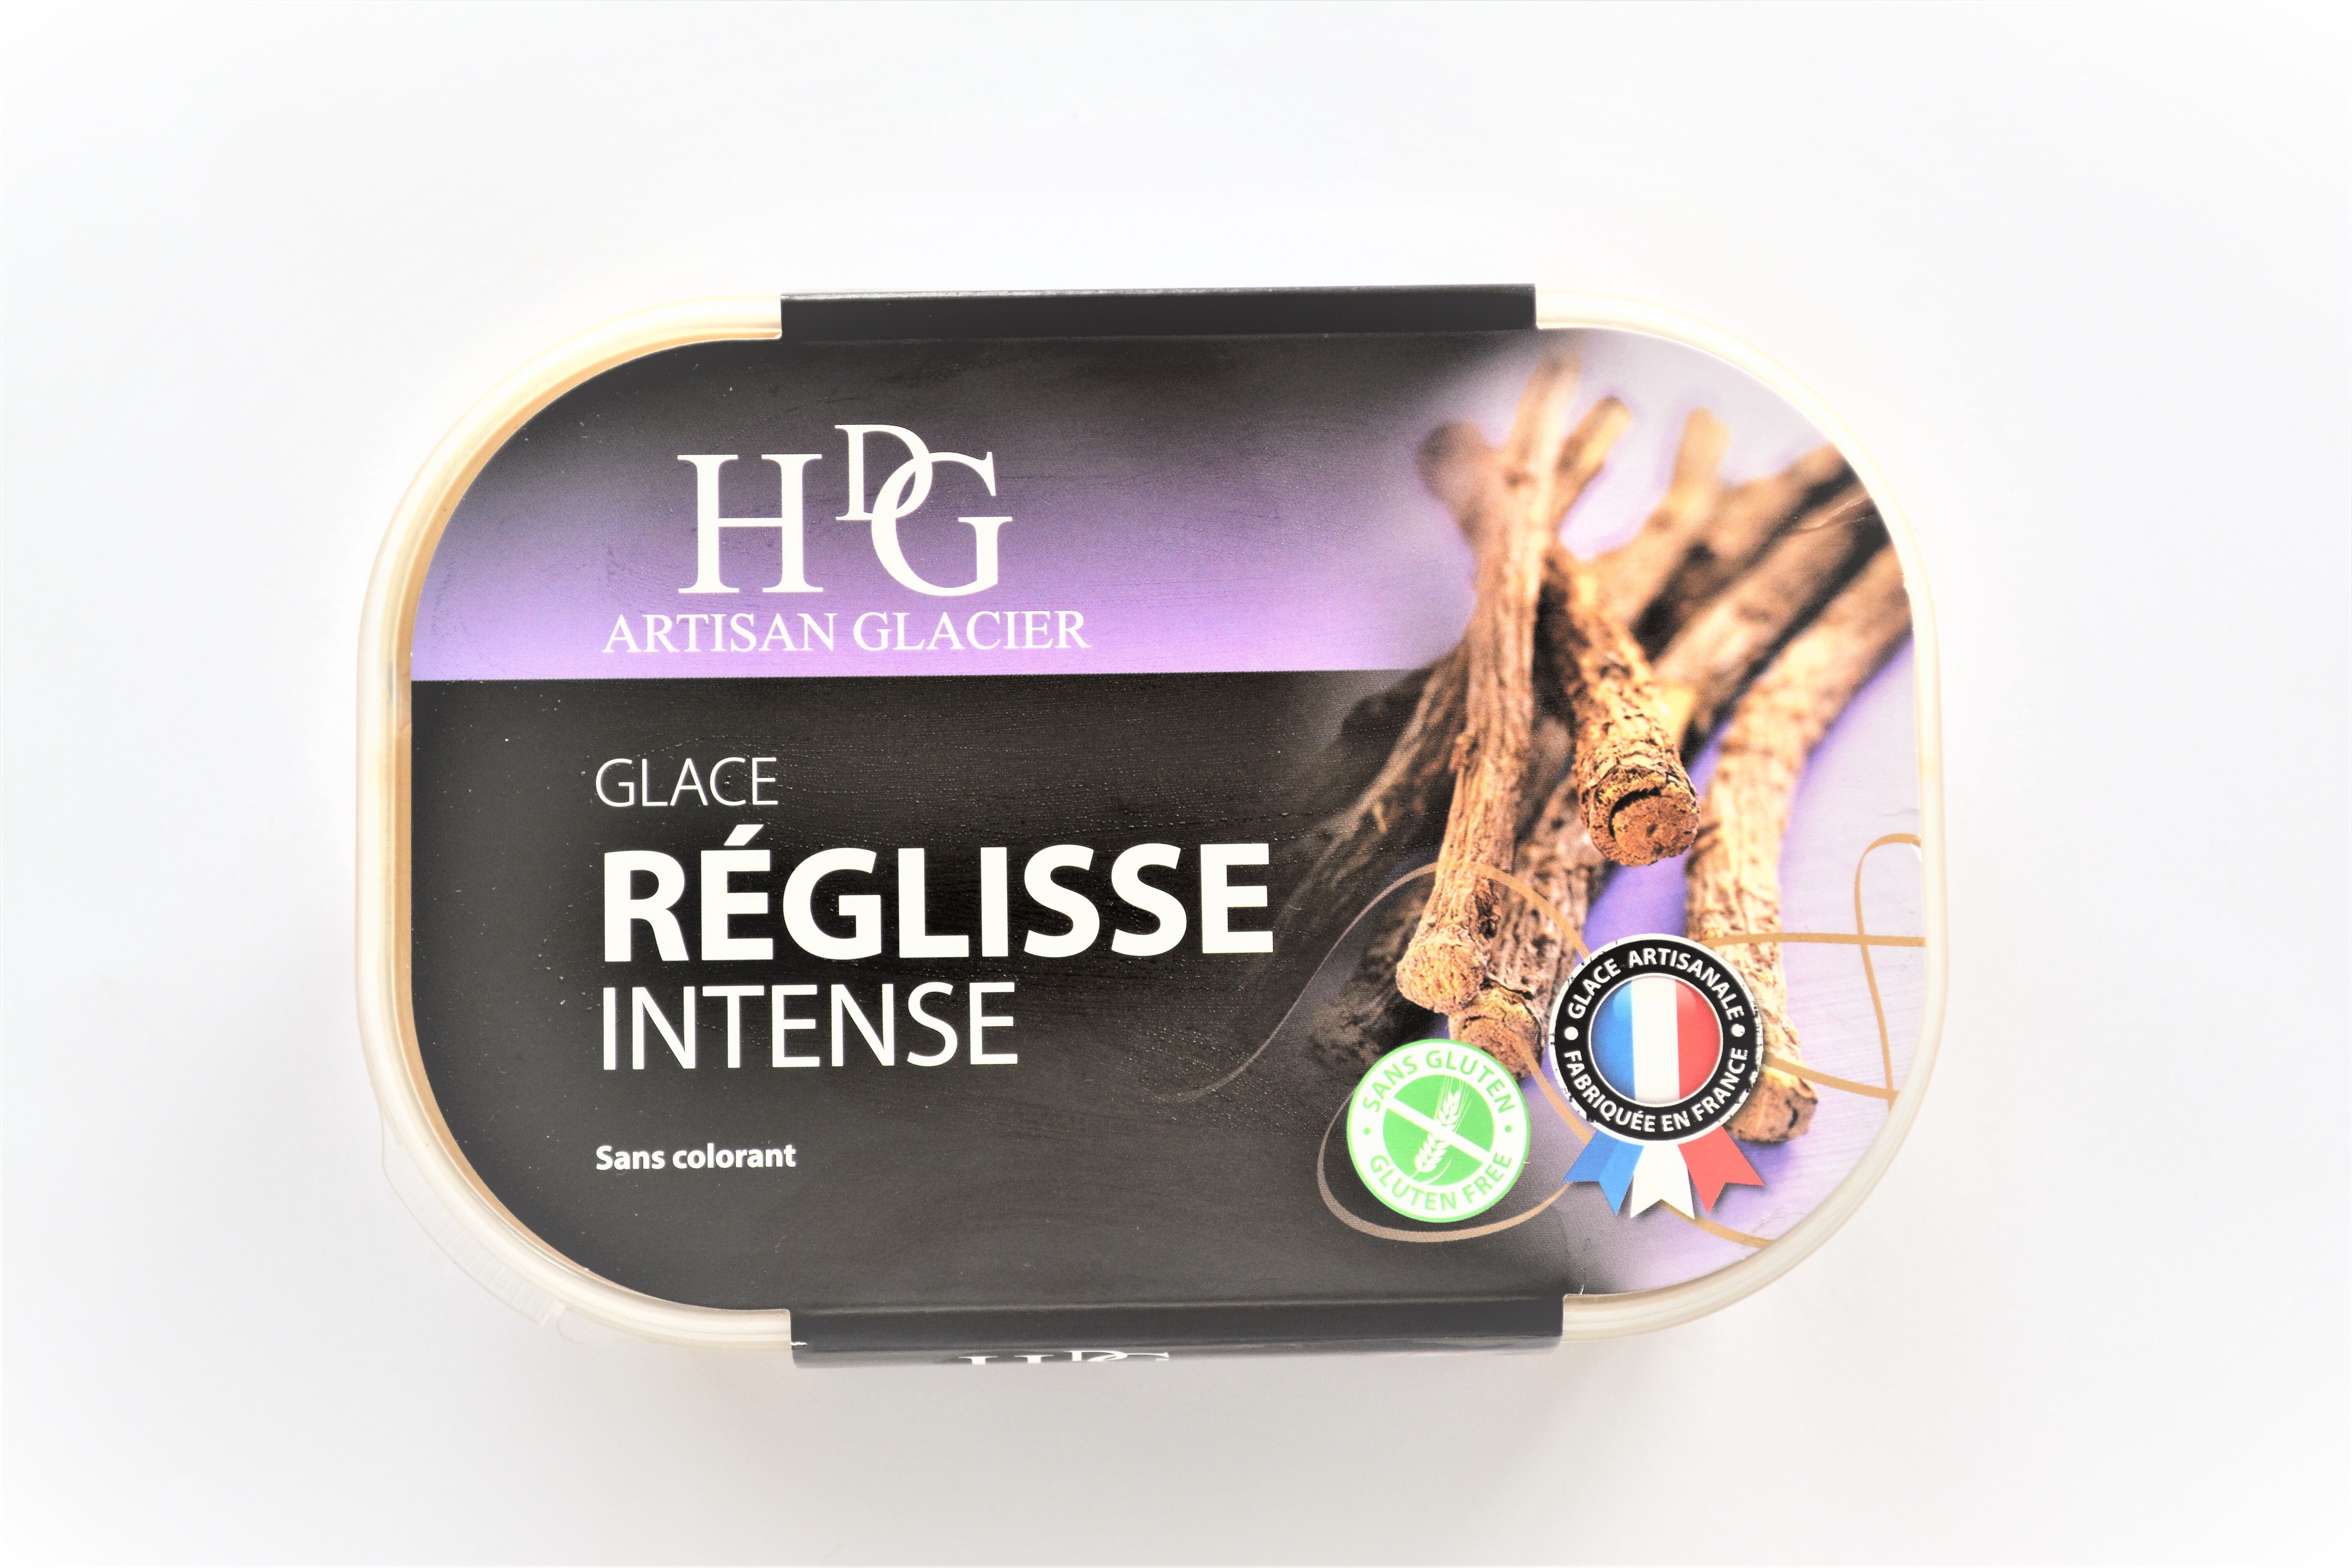 Glace RÉGLISSE Intense - Product - fr